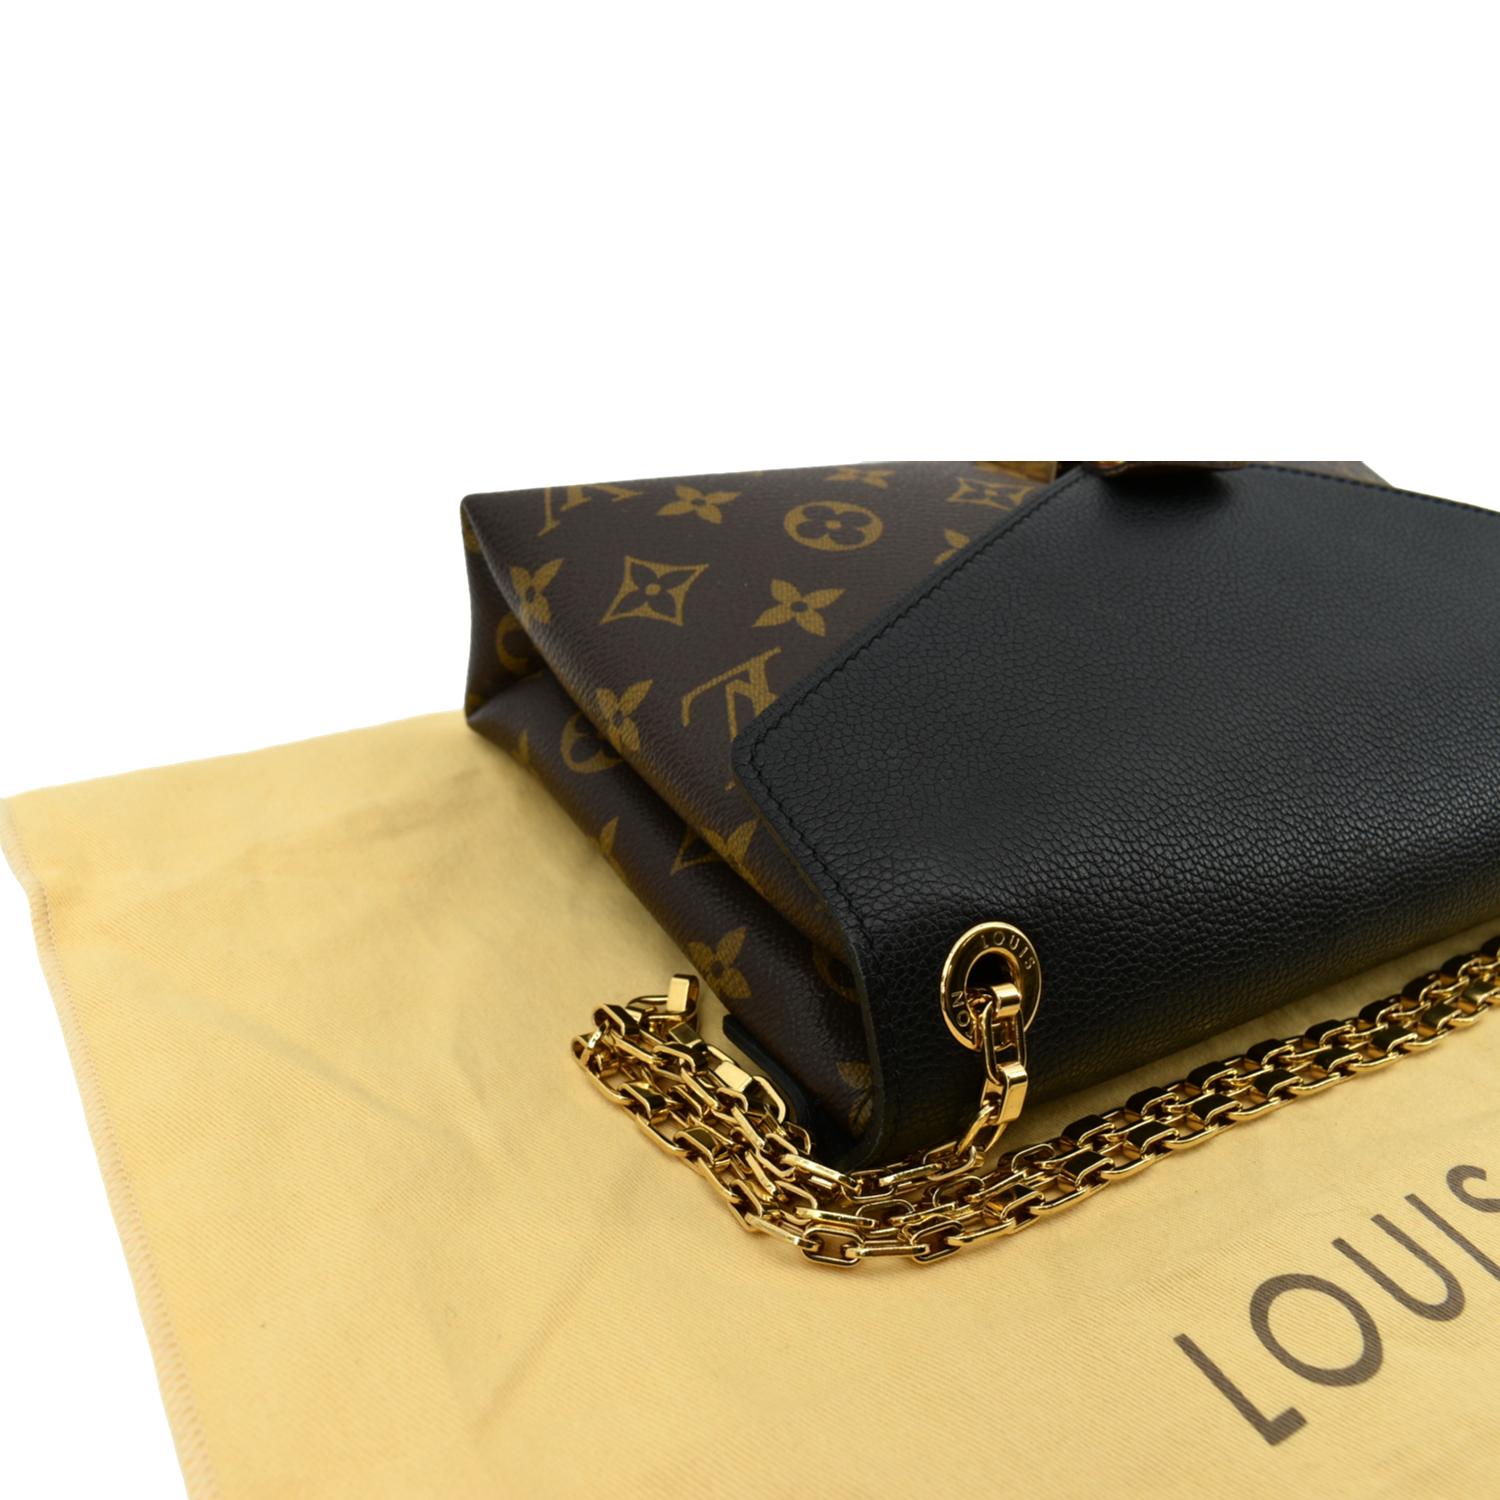 Louis Vuitton Chain Bag